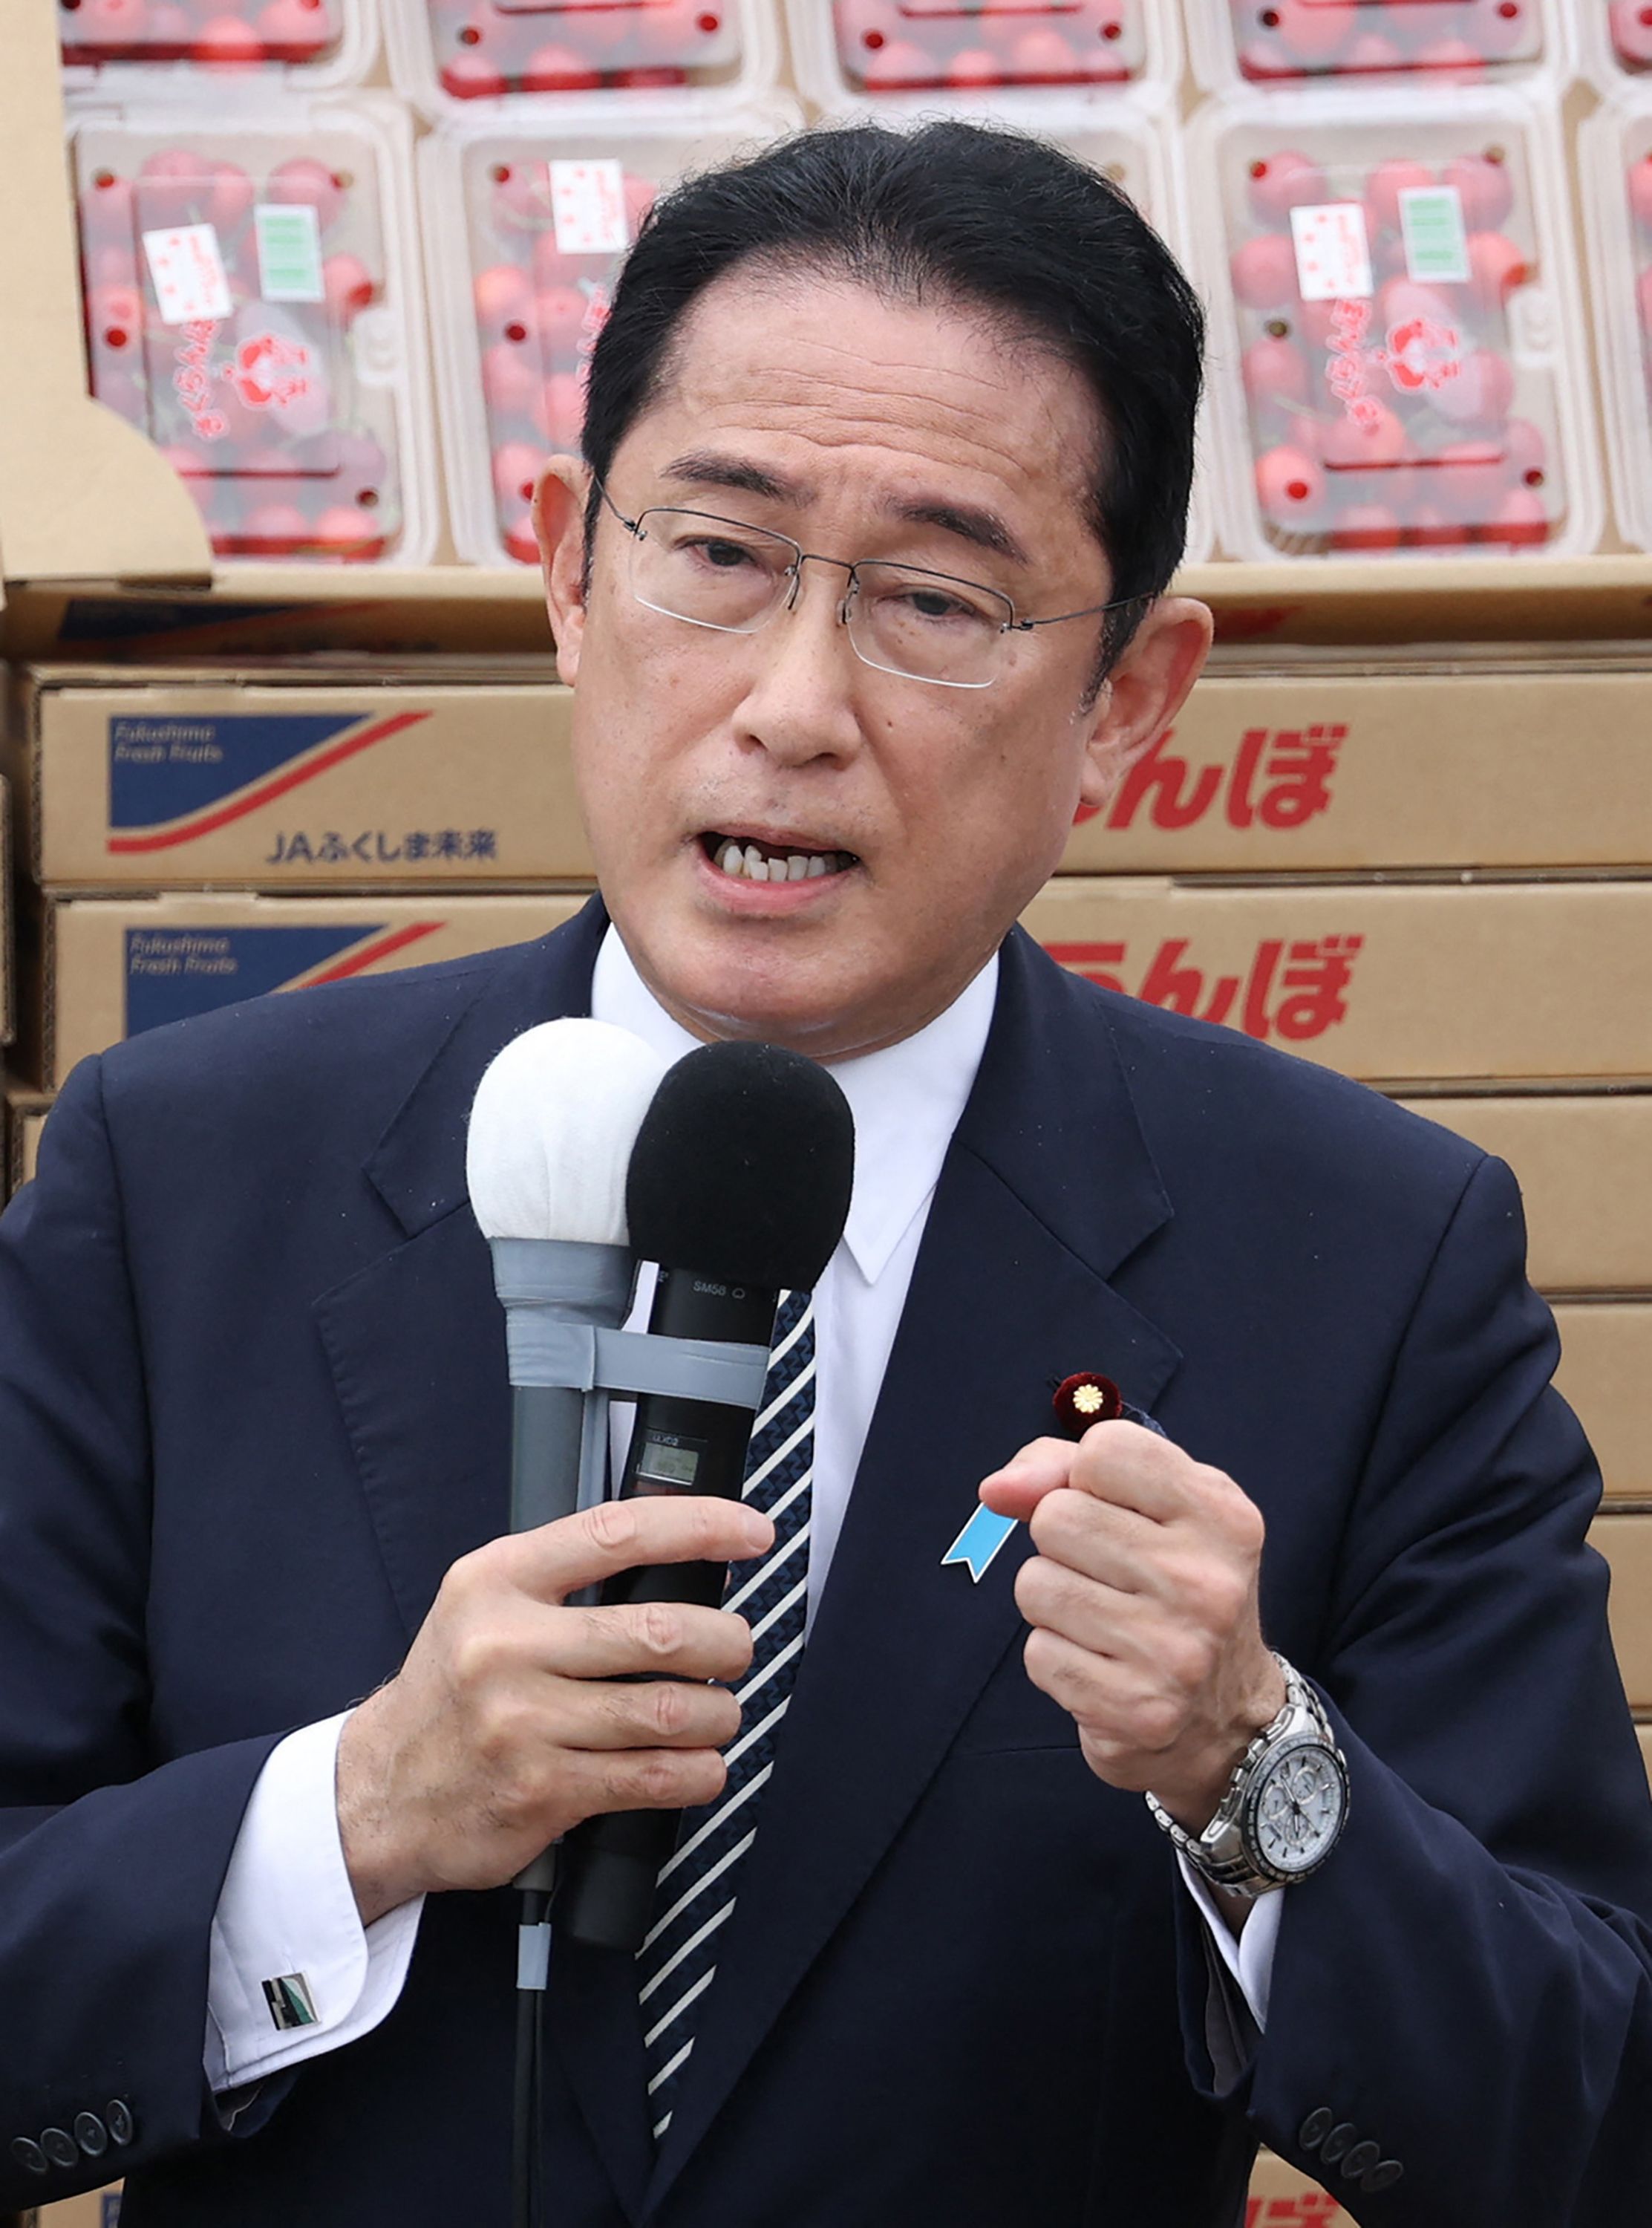 기시다 후미오 일본 총리가 참의원 선거 공식 일정 첫날인 22일 후쿠시마현에서 지원 유세를 하고 있다.